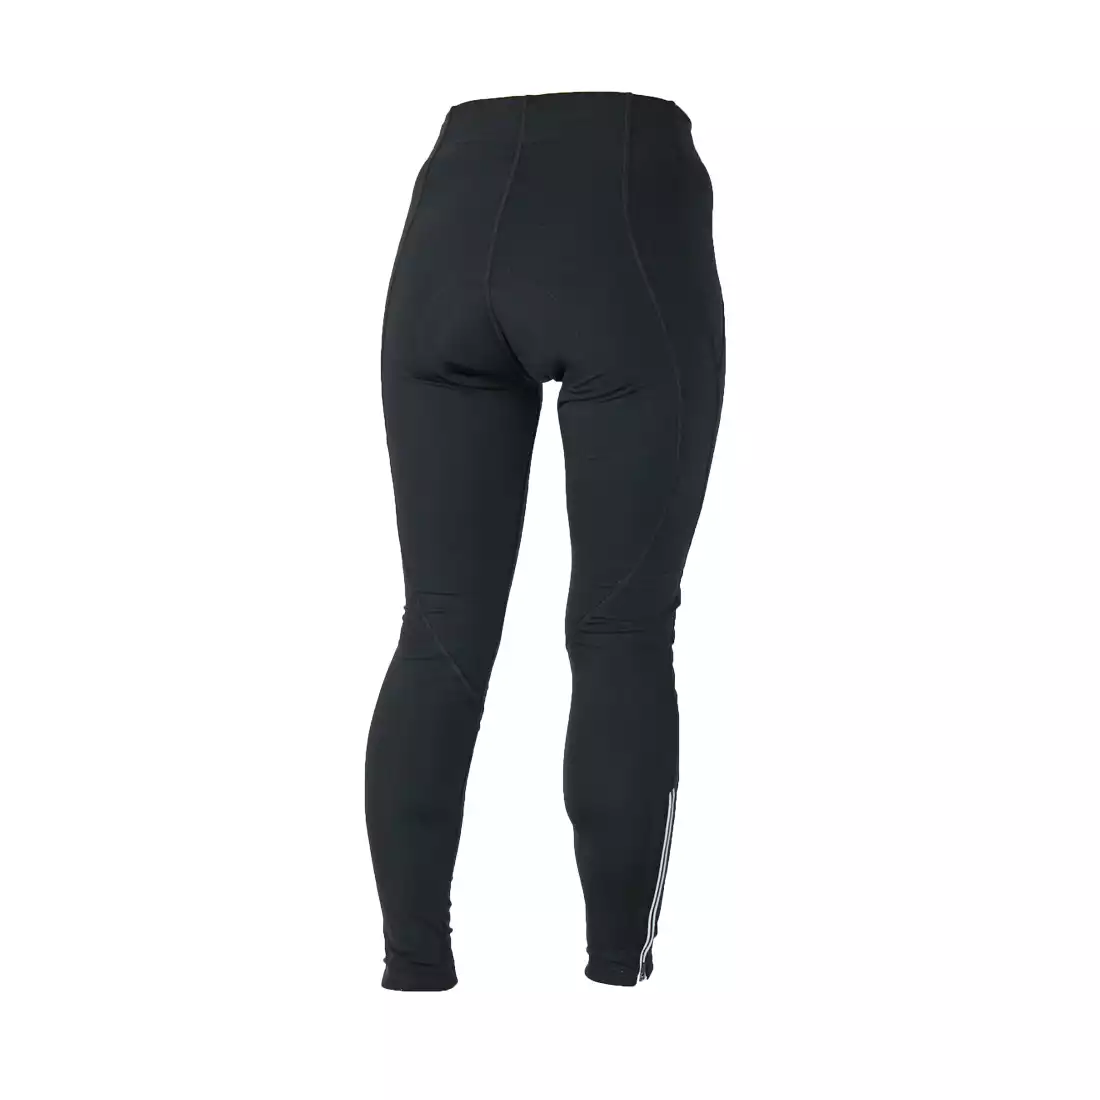 ROGELLI LUCILLA - damskie ocieplane spodnie rowerowe, wkładka COOLAMAX GEL,  kolor: Czarny